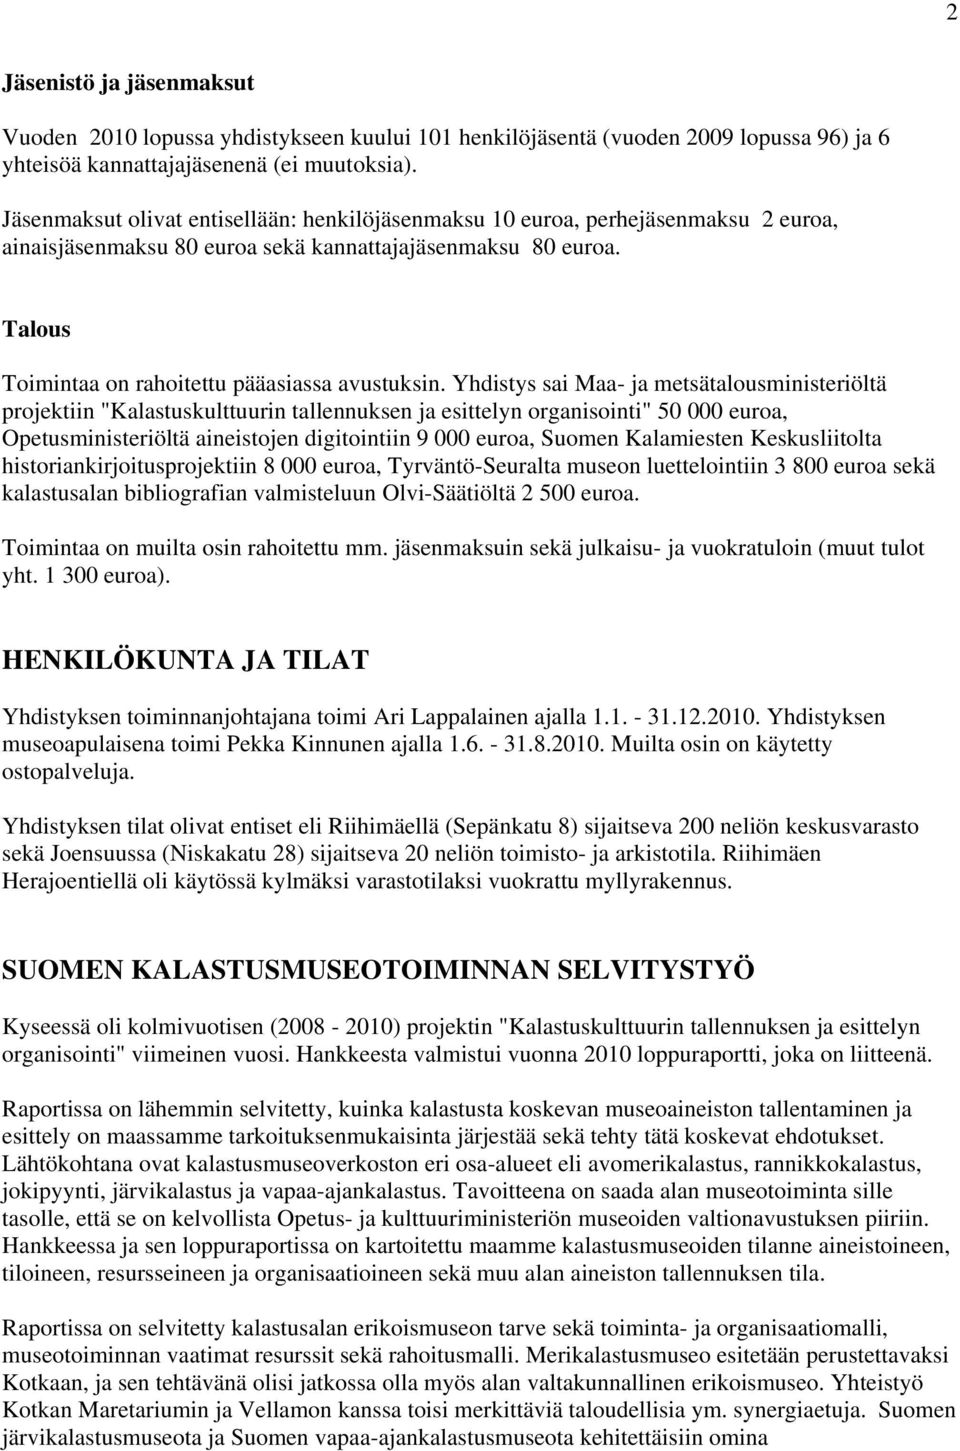 Yhdistys sai Maa- ja metsätalousministeriöltä projektiin "Kalastuskulttuurin tallennuksen ja esittelyn organisointi" 50 000 euroa, Opetusministeriöltä aineistojen digitointiin 9 000 euroa, Suomen